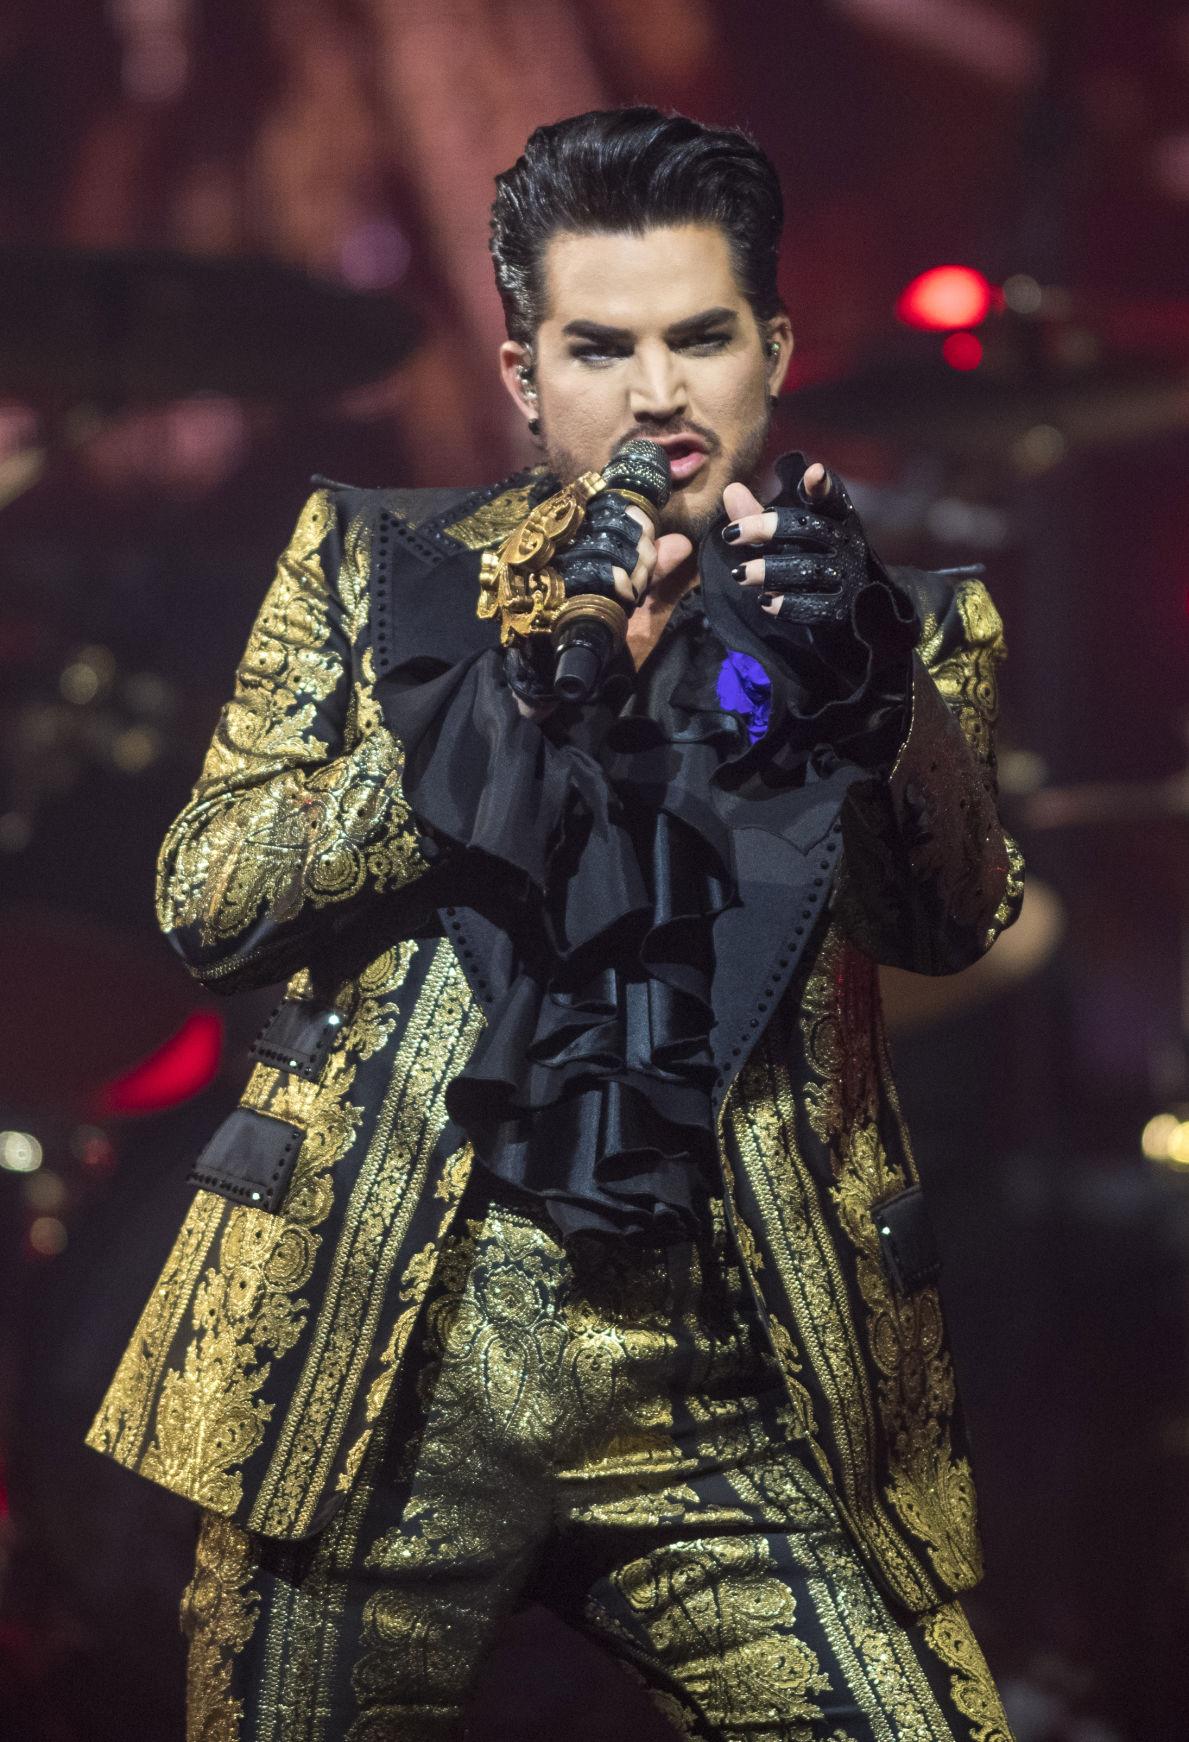 CONCERT REVIEW Queen + Adam Lambert, New Orleans, August 20, 2019